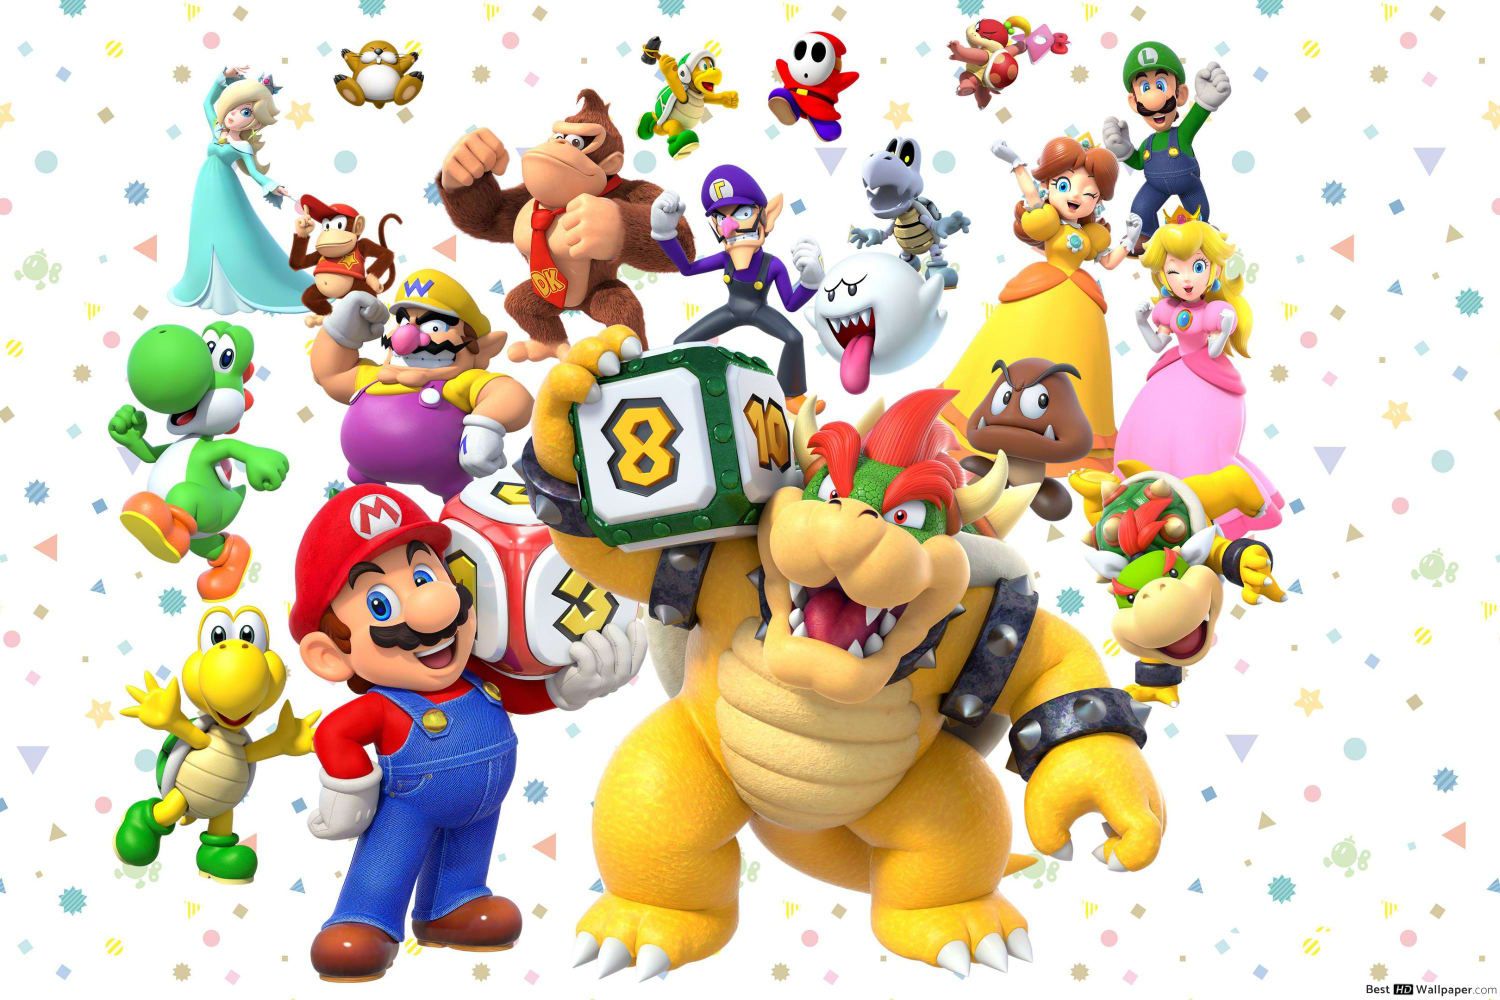 Super Mario 35 Anos - Os Melhores Jogos de Esporte da Série [Especial]